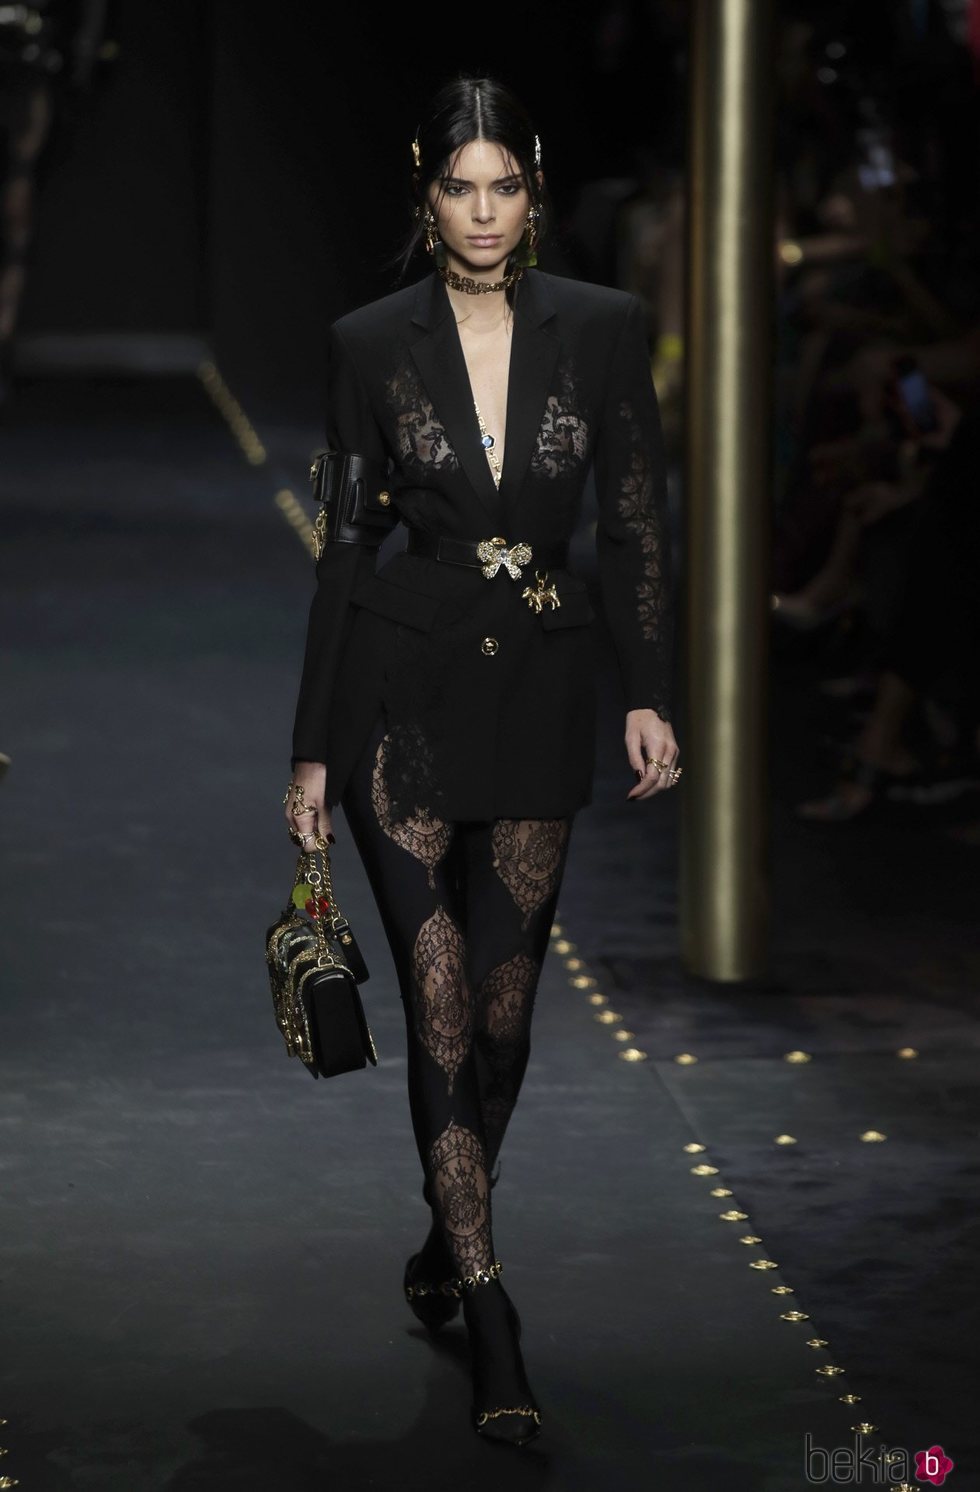 Kendall Jenner desfilando con una blazer negra de Moschino otoño/invierno 2019/2020 en la Milán Fashion Week